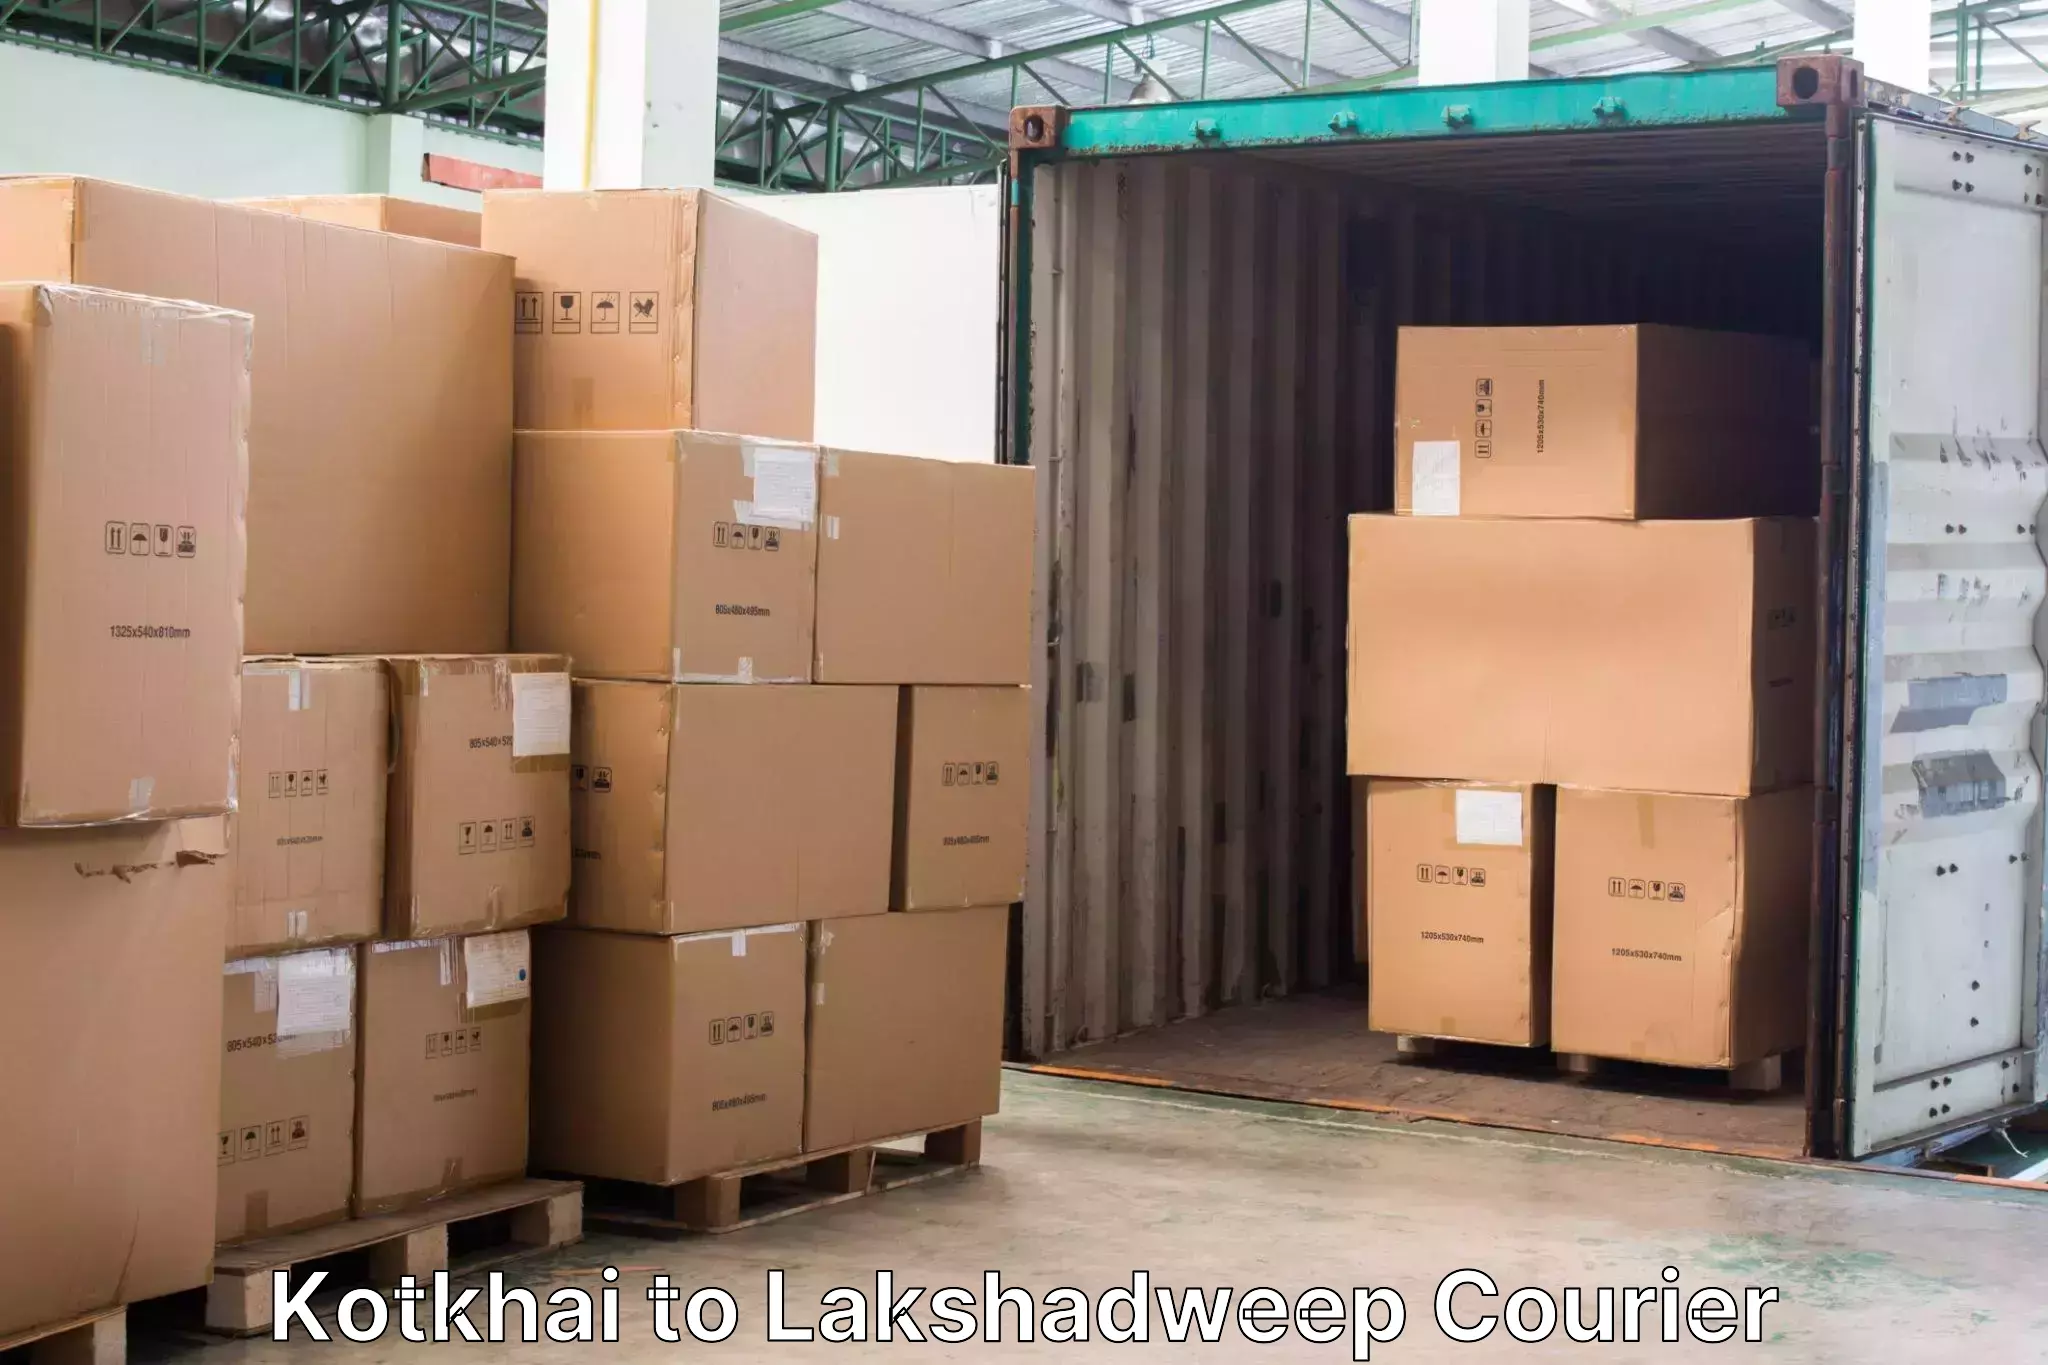 Baggage transport management in Kotkhai to Lakshadweep